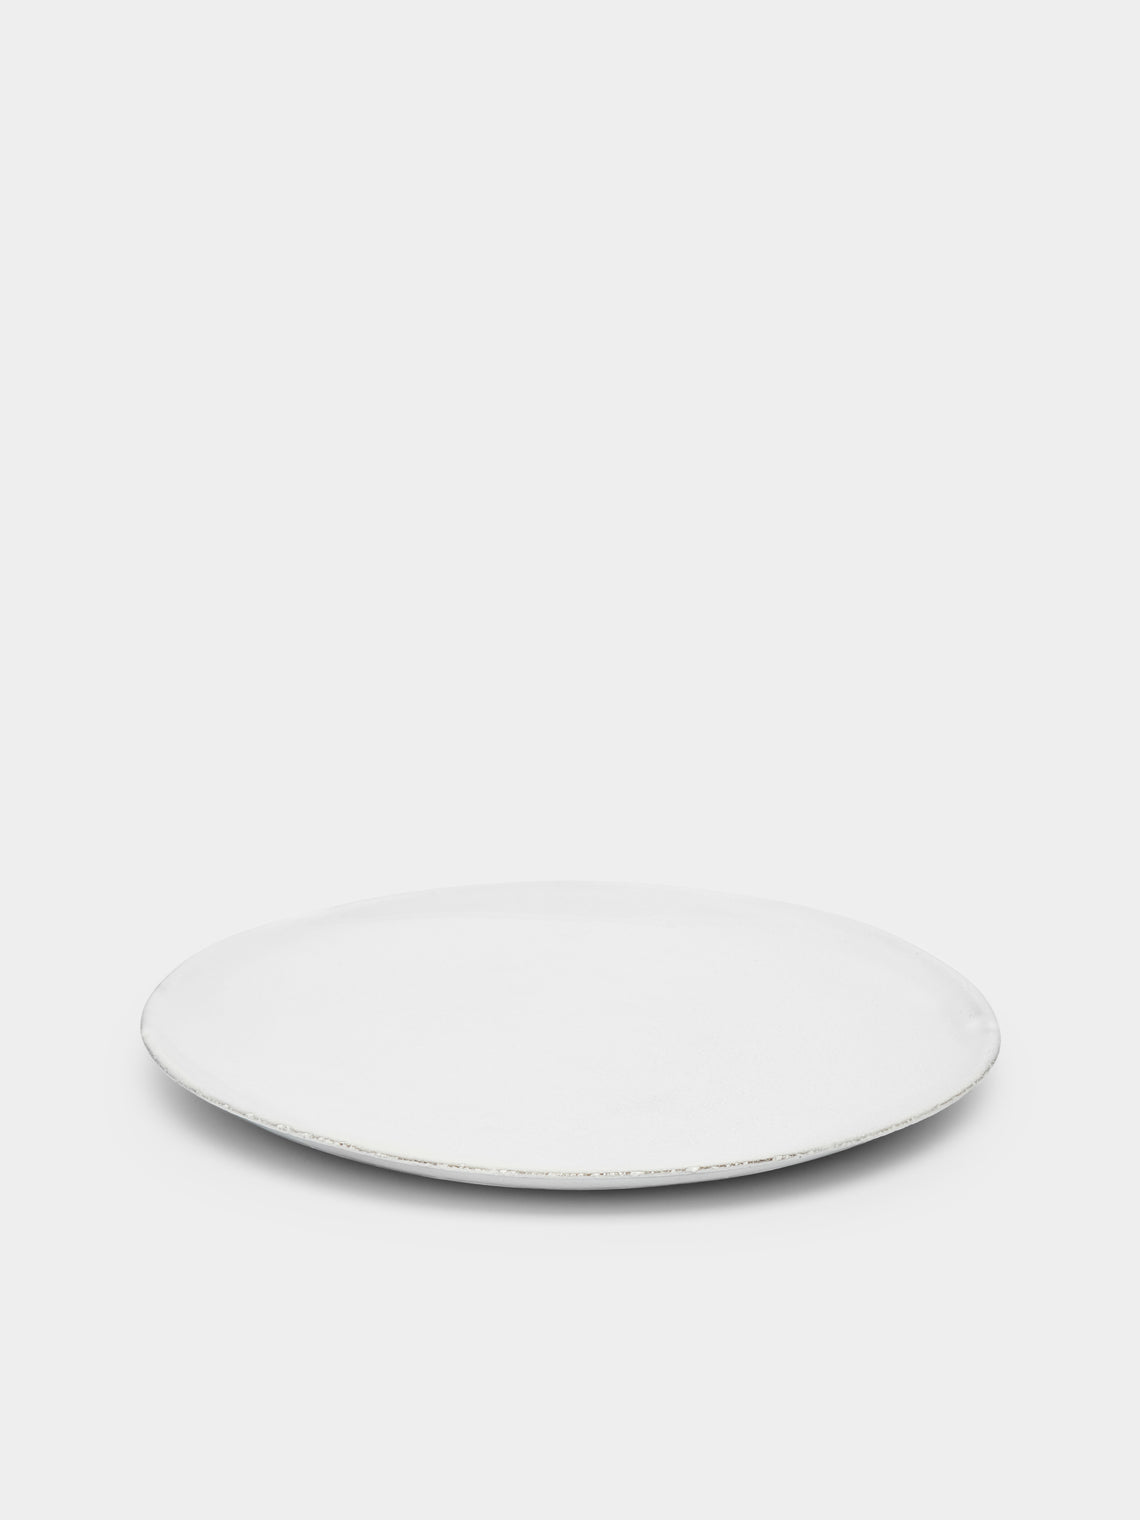 Astier de Villatte - Rien Side Plate -  - ABASK